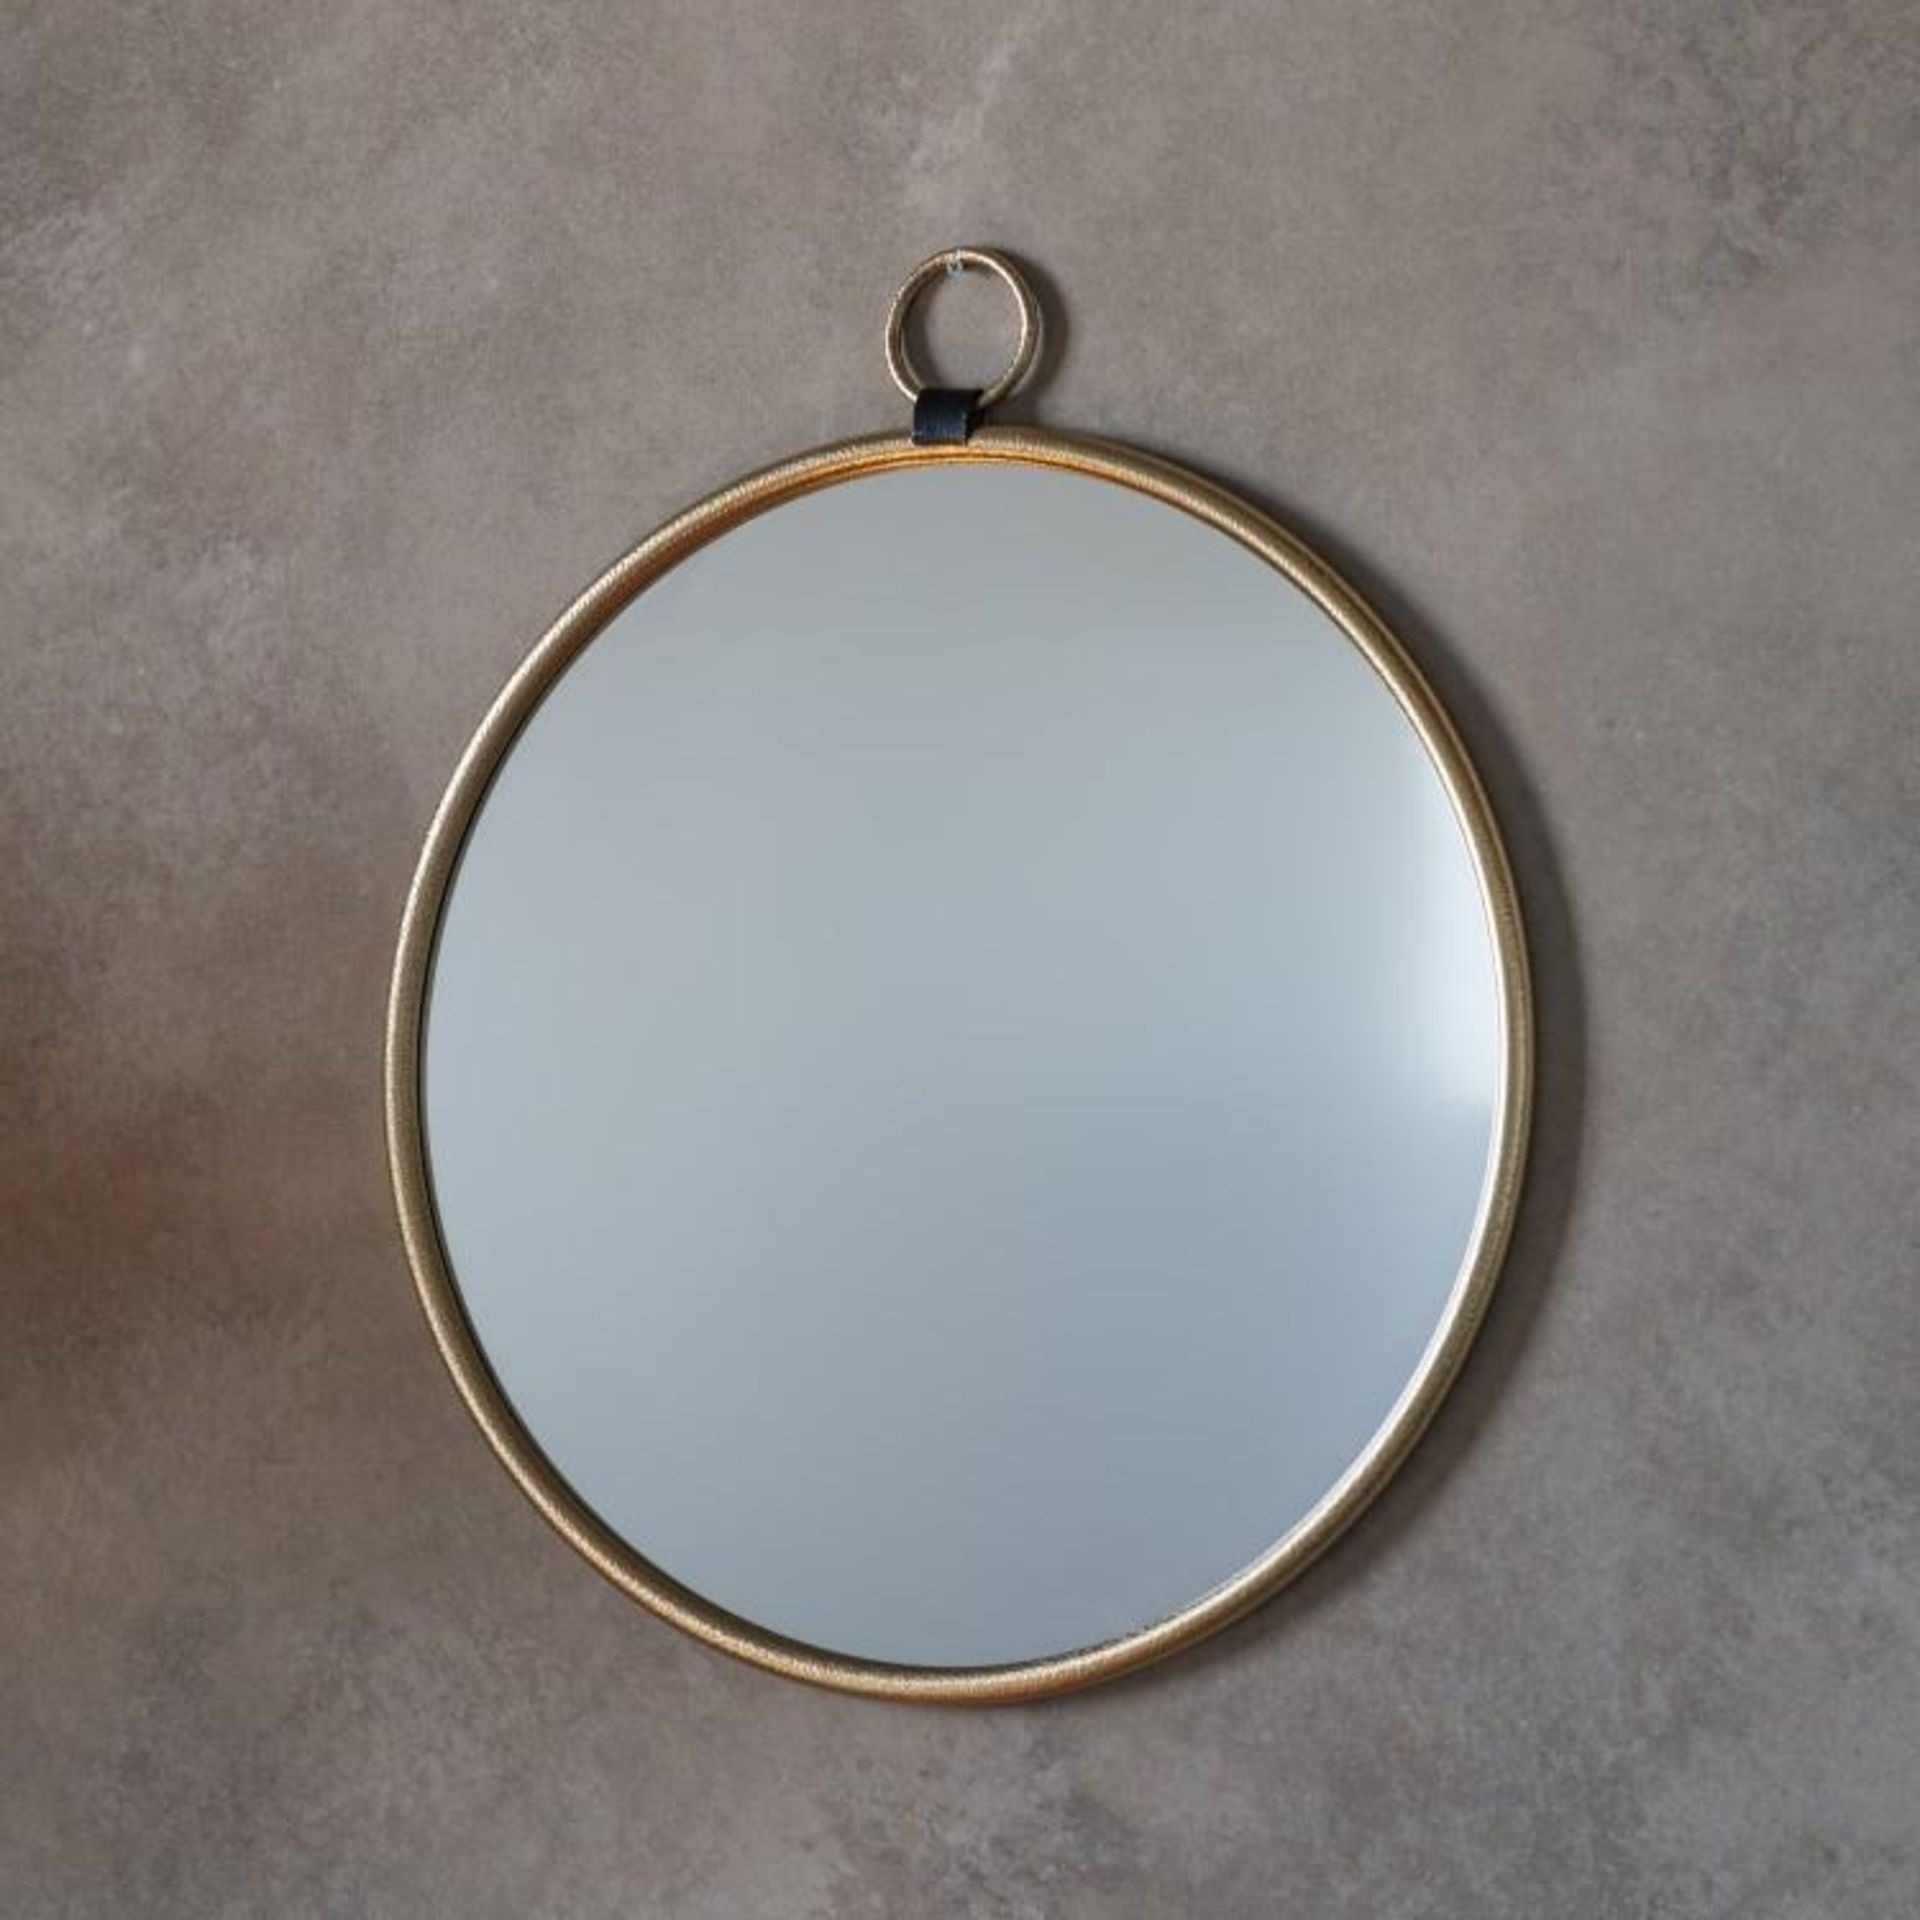 Bayswater round mirror